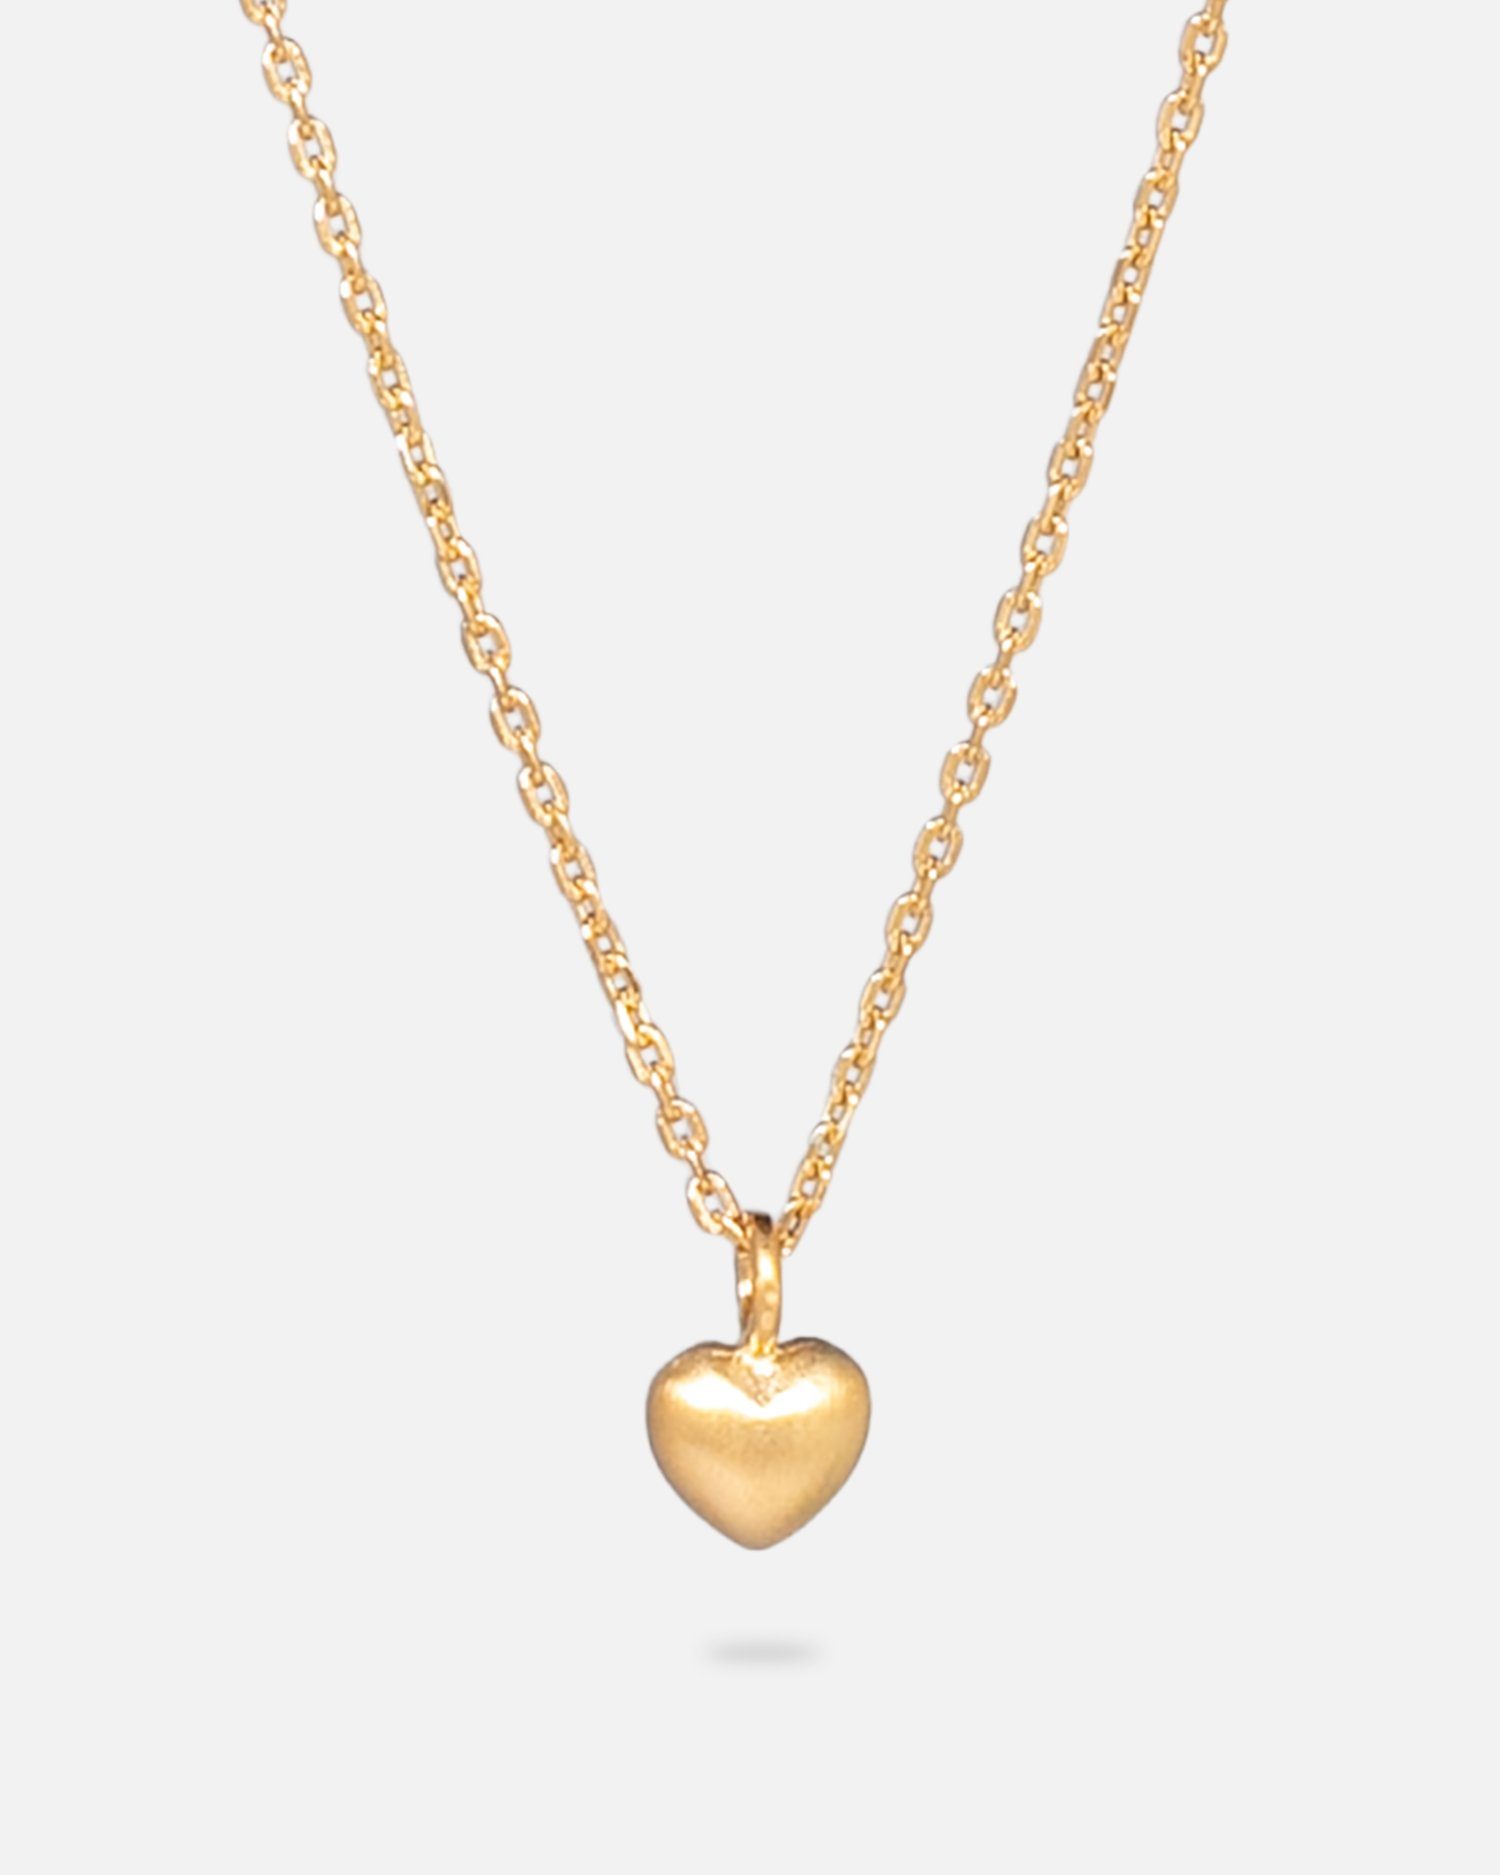 Corydon vergoldet 40-45 cm, Damen Silber Halskette 925, Karat Pernille 18 Herzkette Love